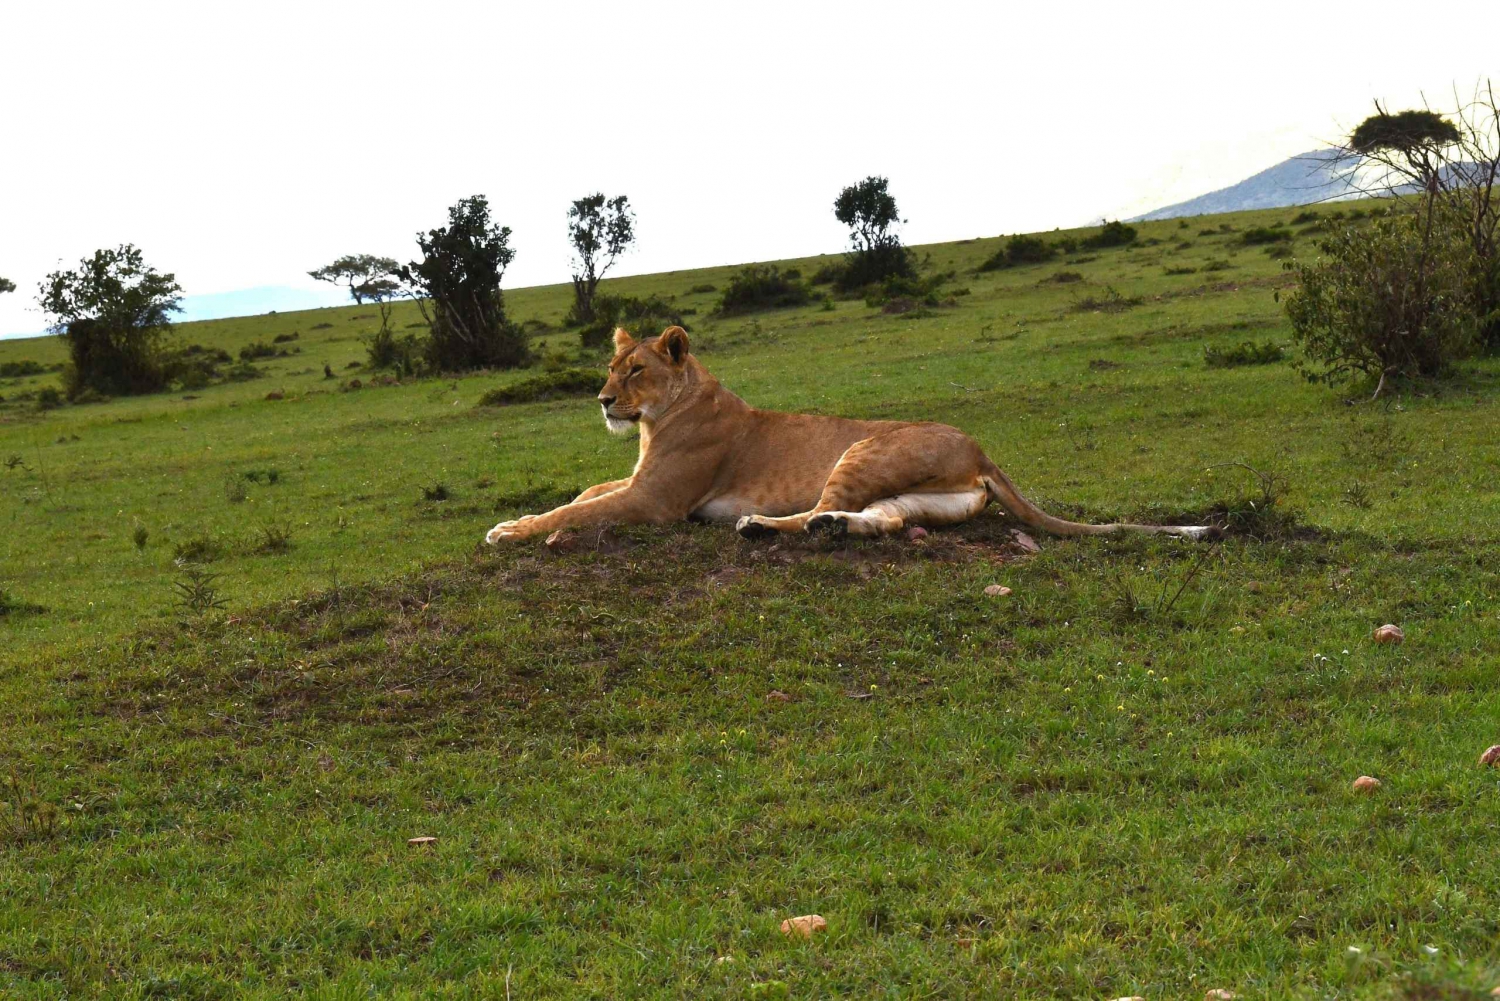 Amboseli nationalpark heldagstur från Nairobi